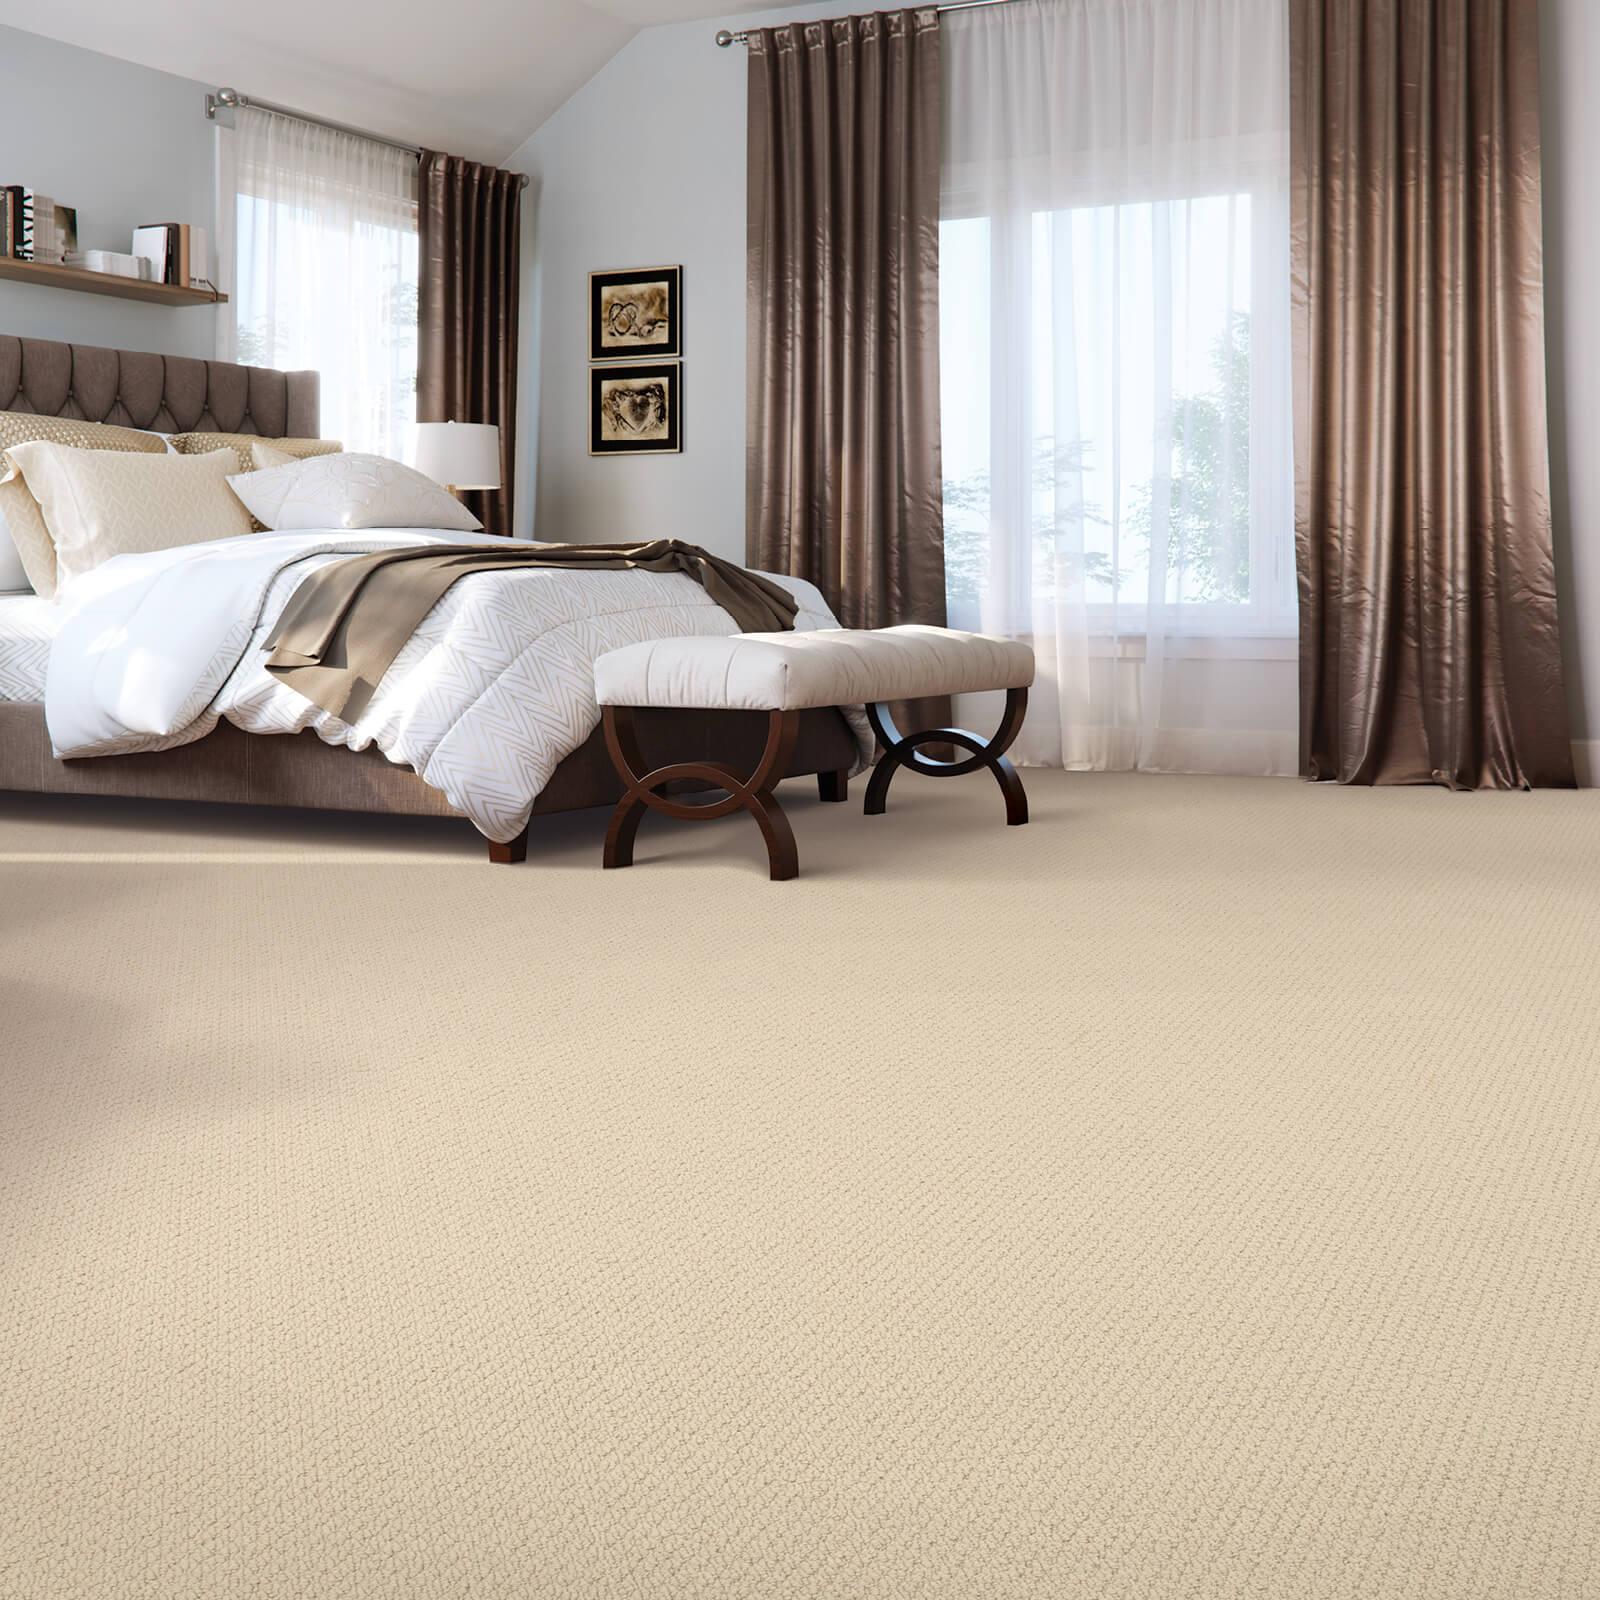 Bedroom carpet floor | Flooring Direct